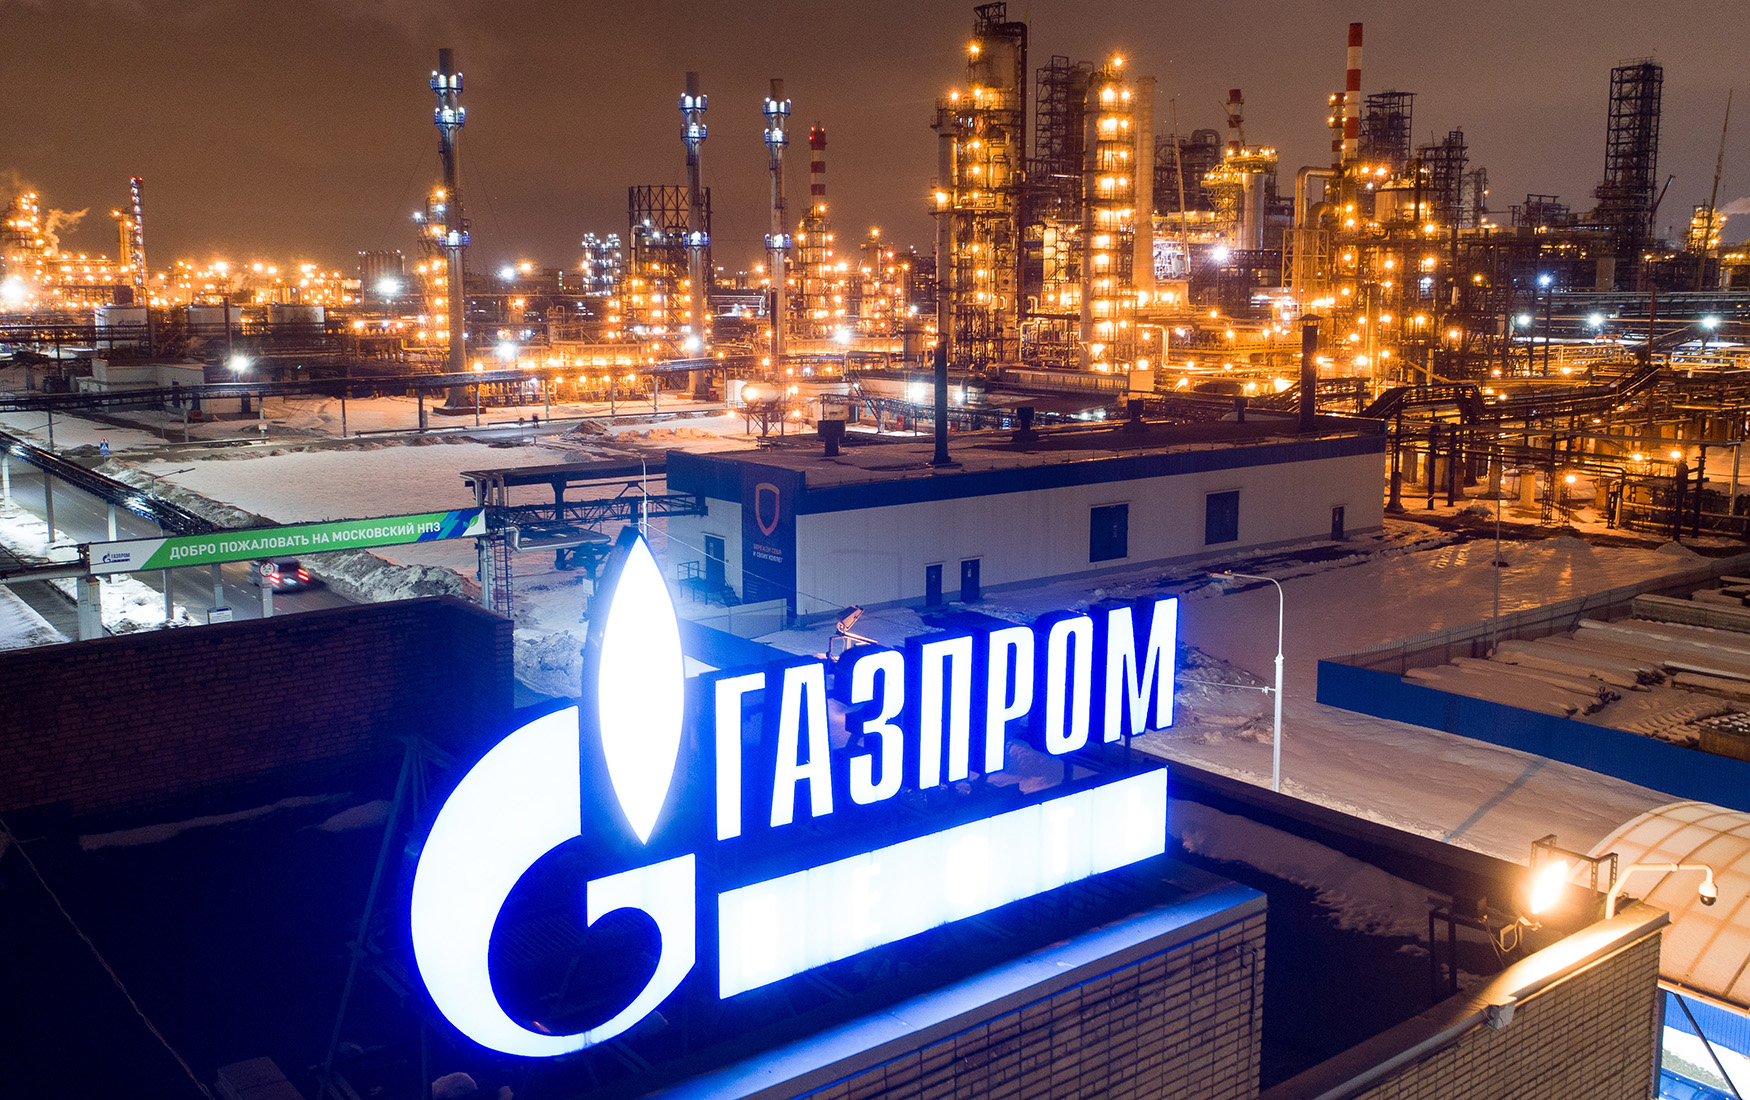 Polşa radiosu “Qazprom”u fırıldaqçılıqda ittiham etdi